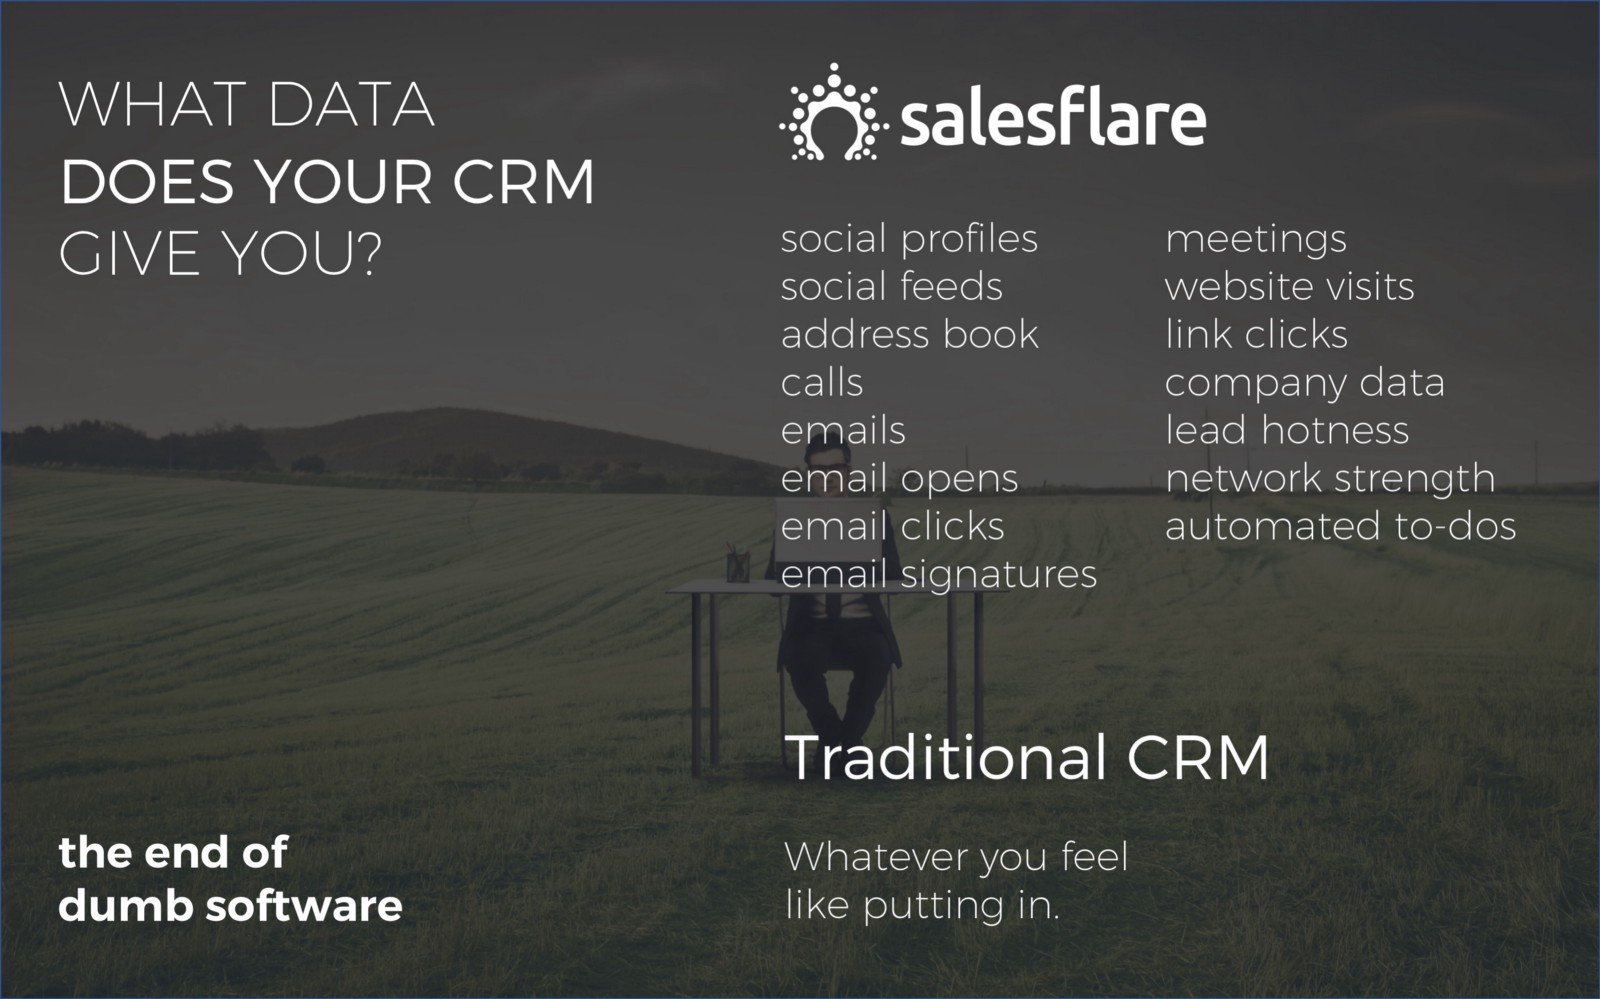 ¿Qué datos le proporciona su CRM? - Salesflare cubierta de ventas